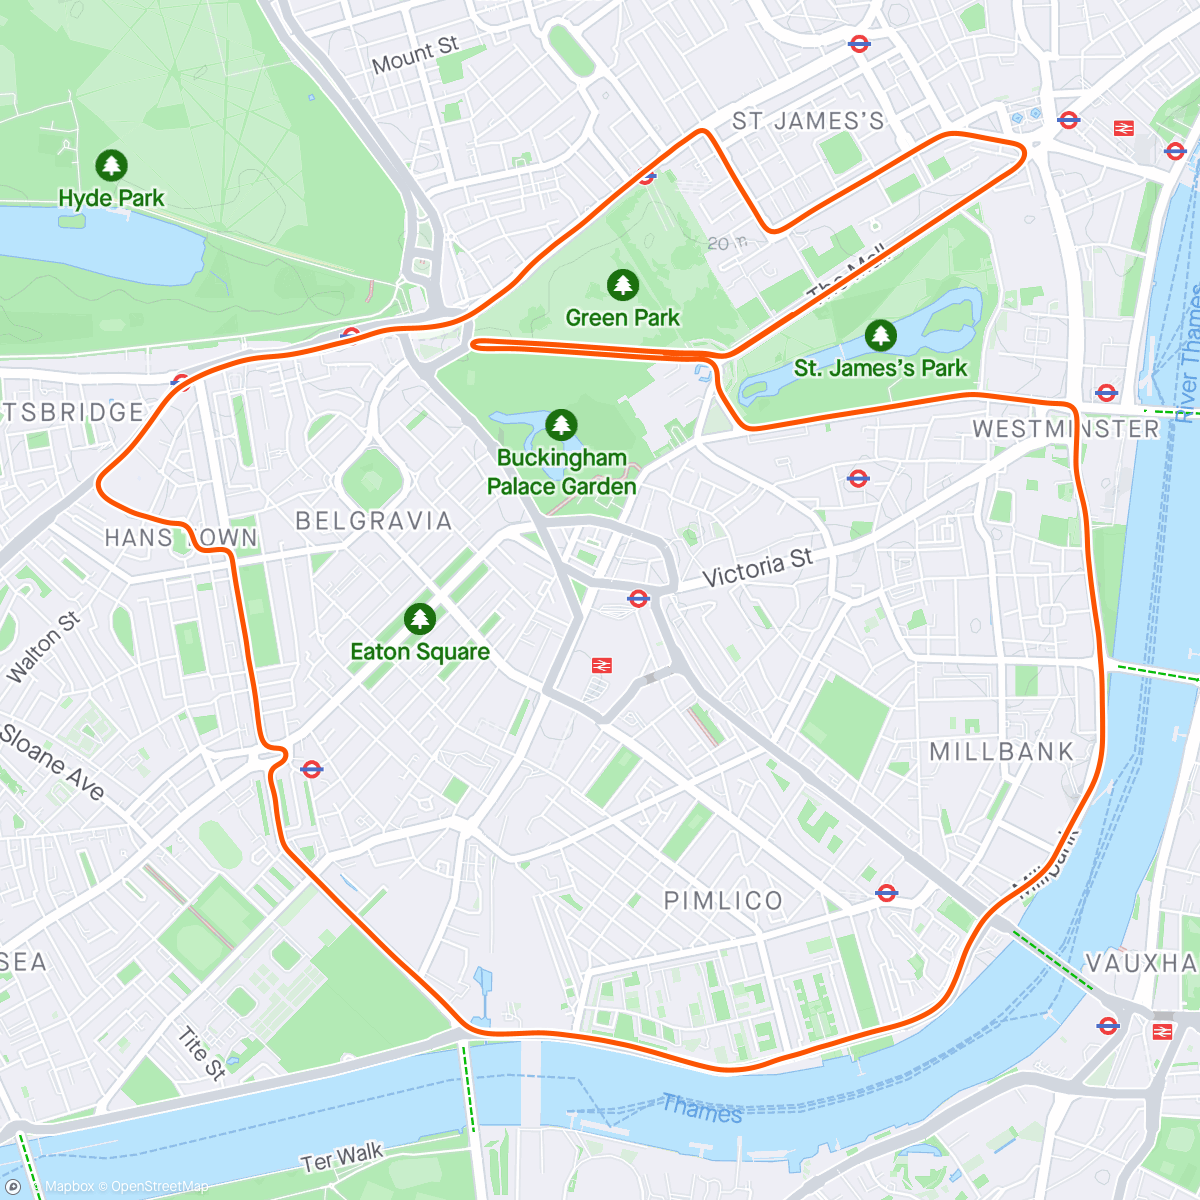 「Zwift - Greater London Flat in London」活動的地圖